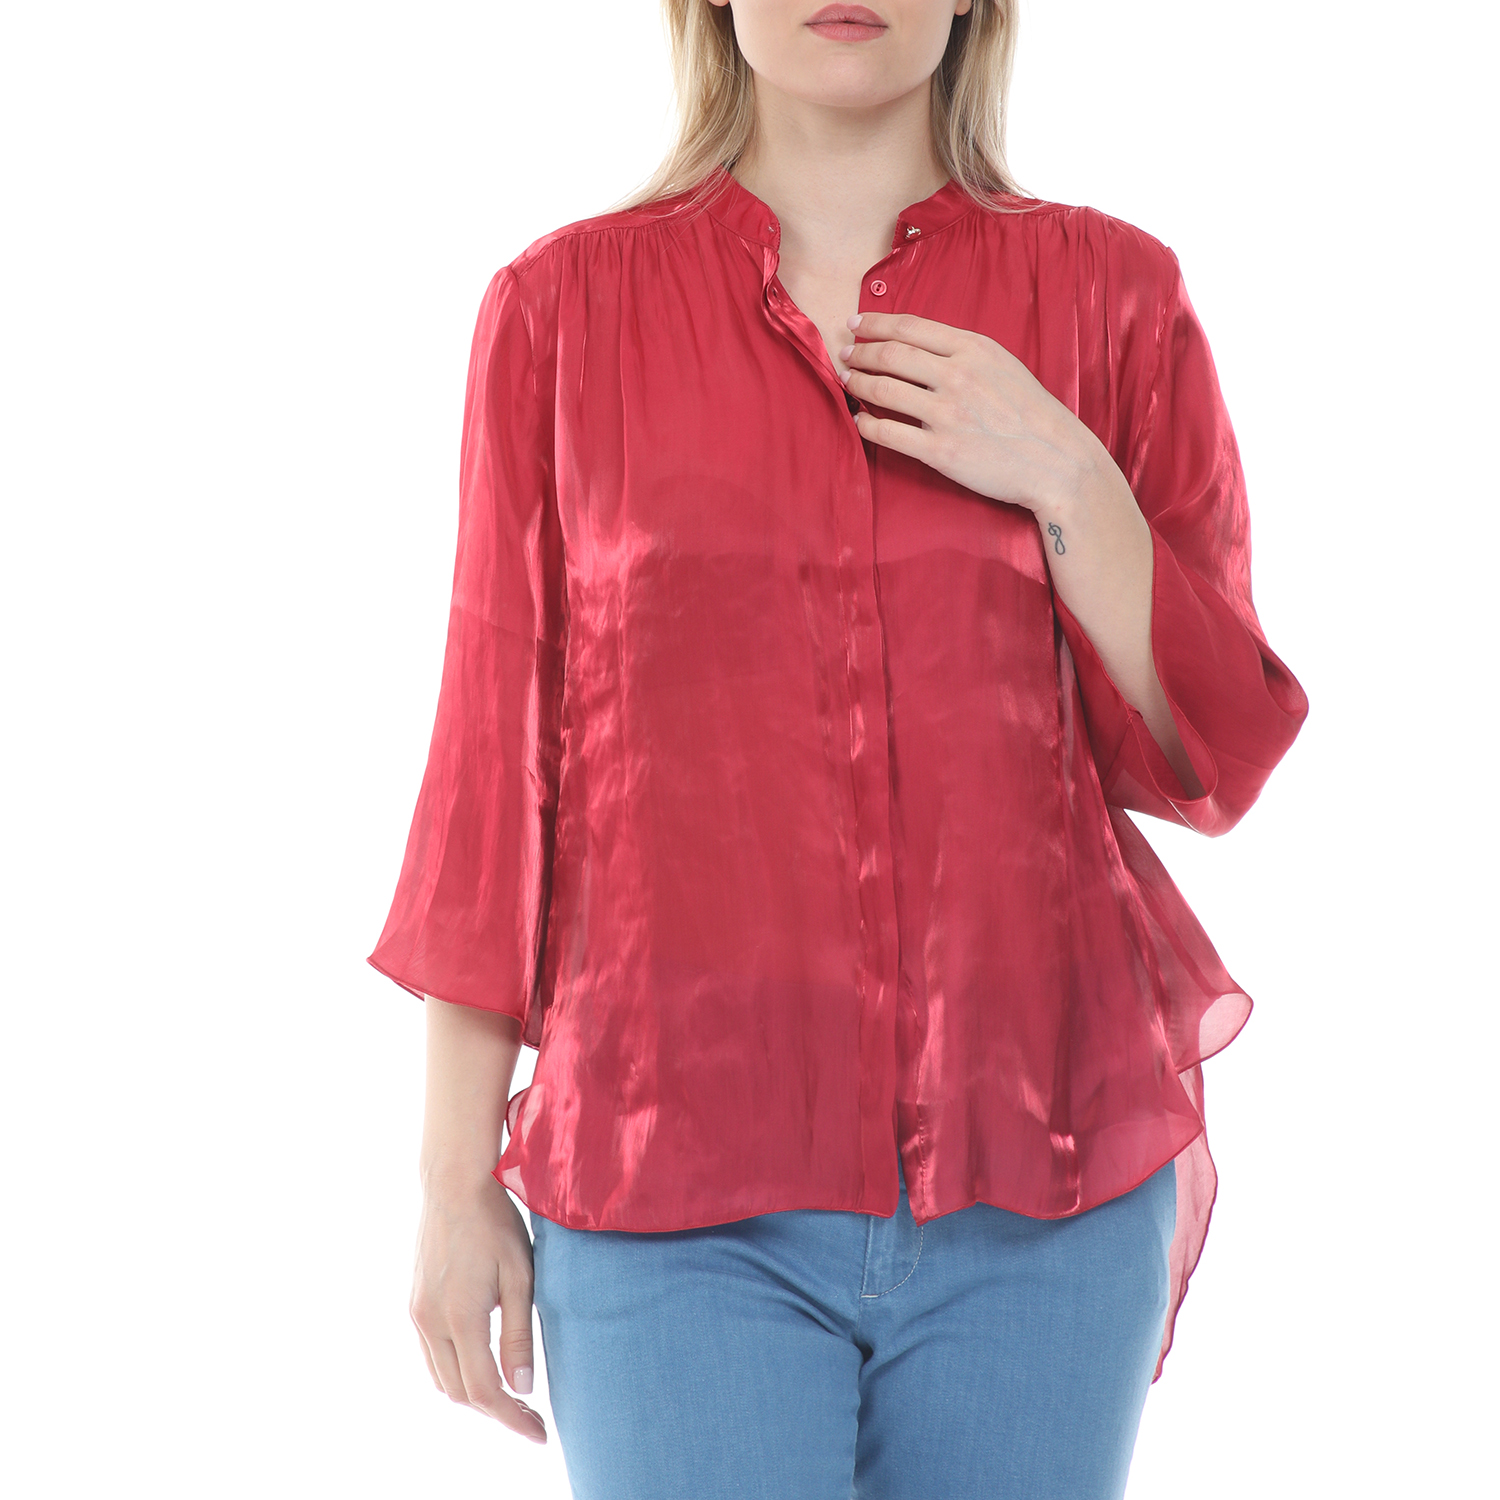 Γυναικεία/Ρούχα/Πουκάμισα/Μακρυμάνικα MOS MOSH - Γυναικείο πουκάμισο MOS MOSH Amal Shirt κόκκινο